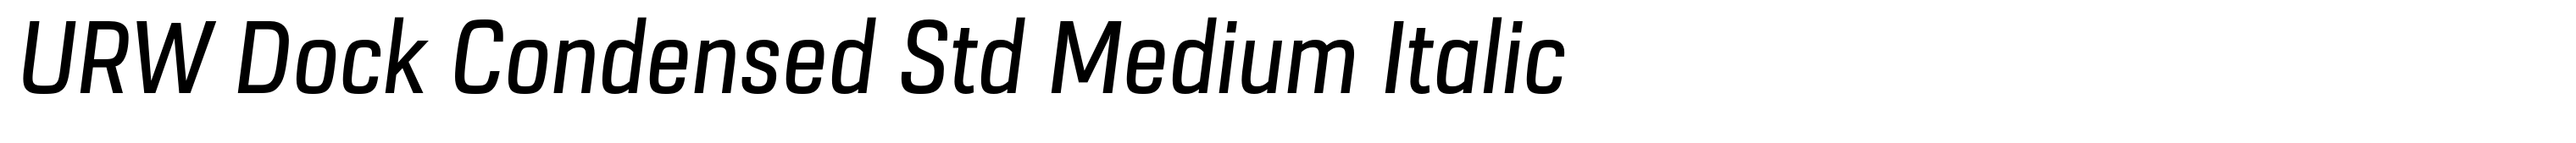 URW Dock Condensed Std Medium Italic